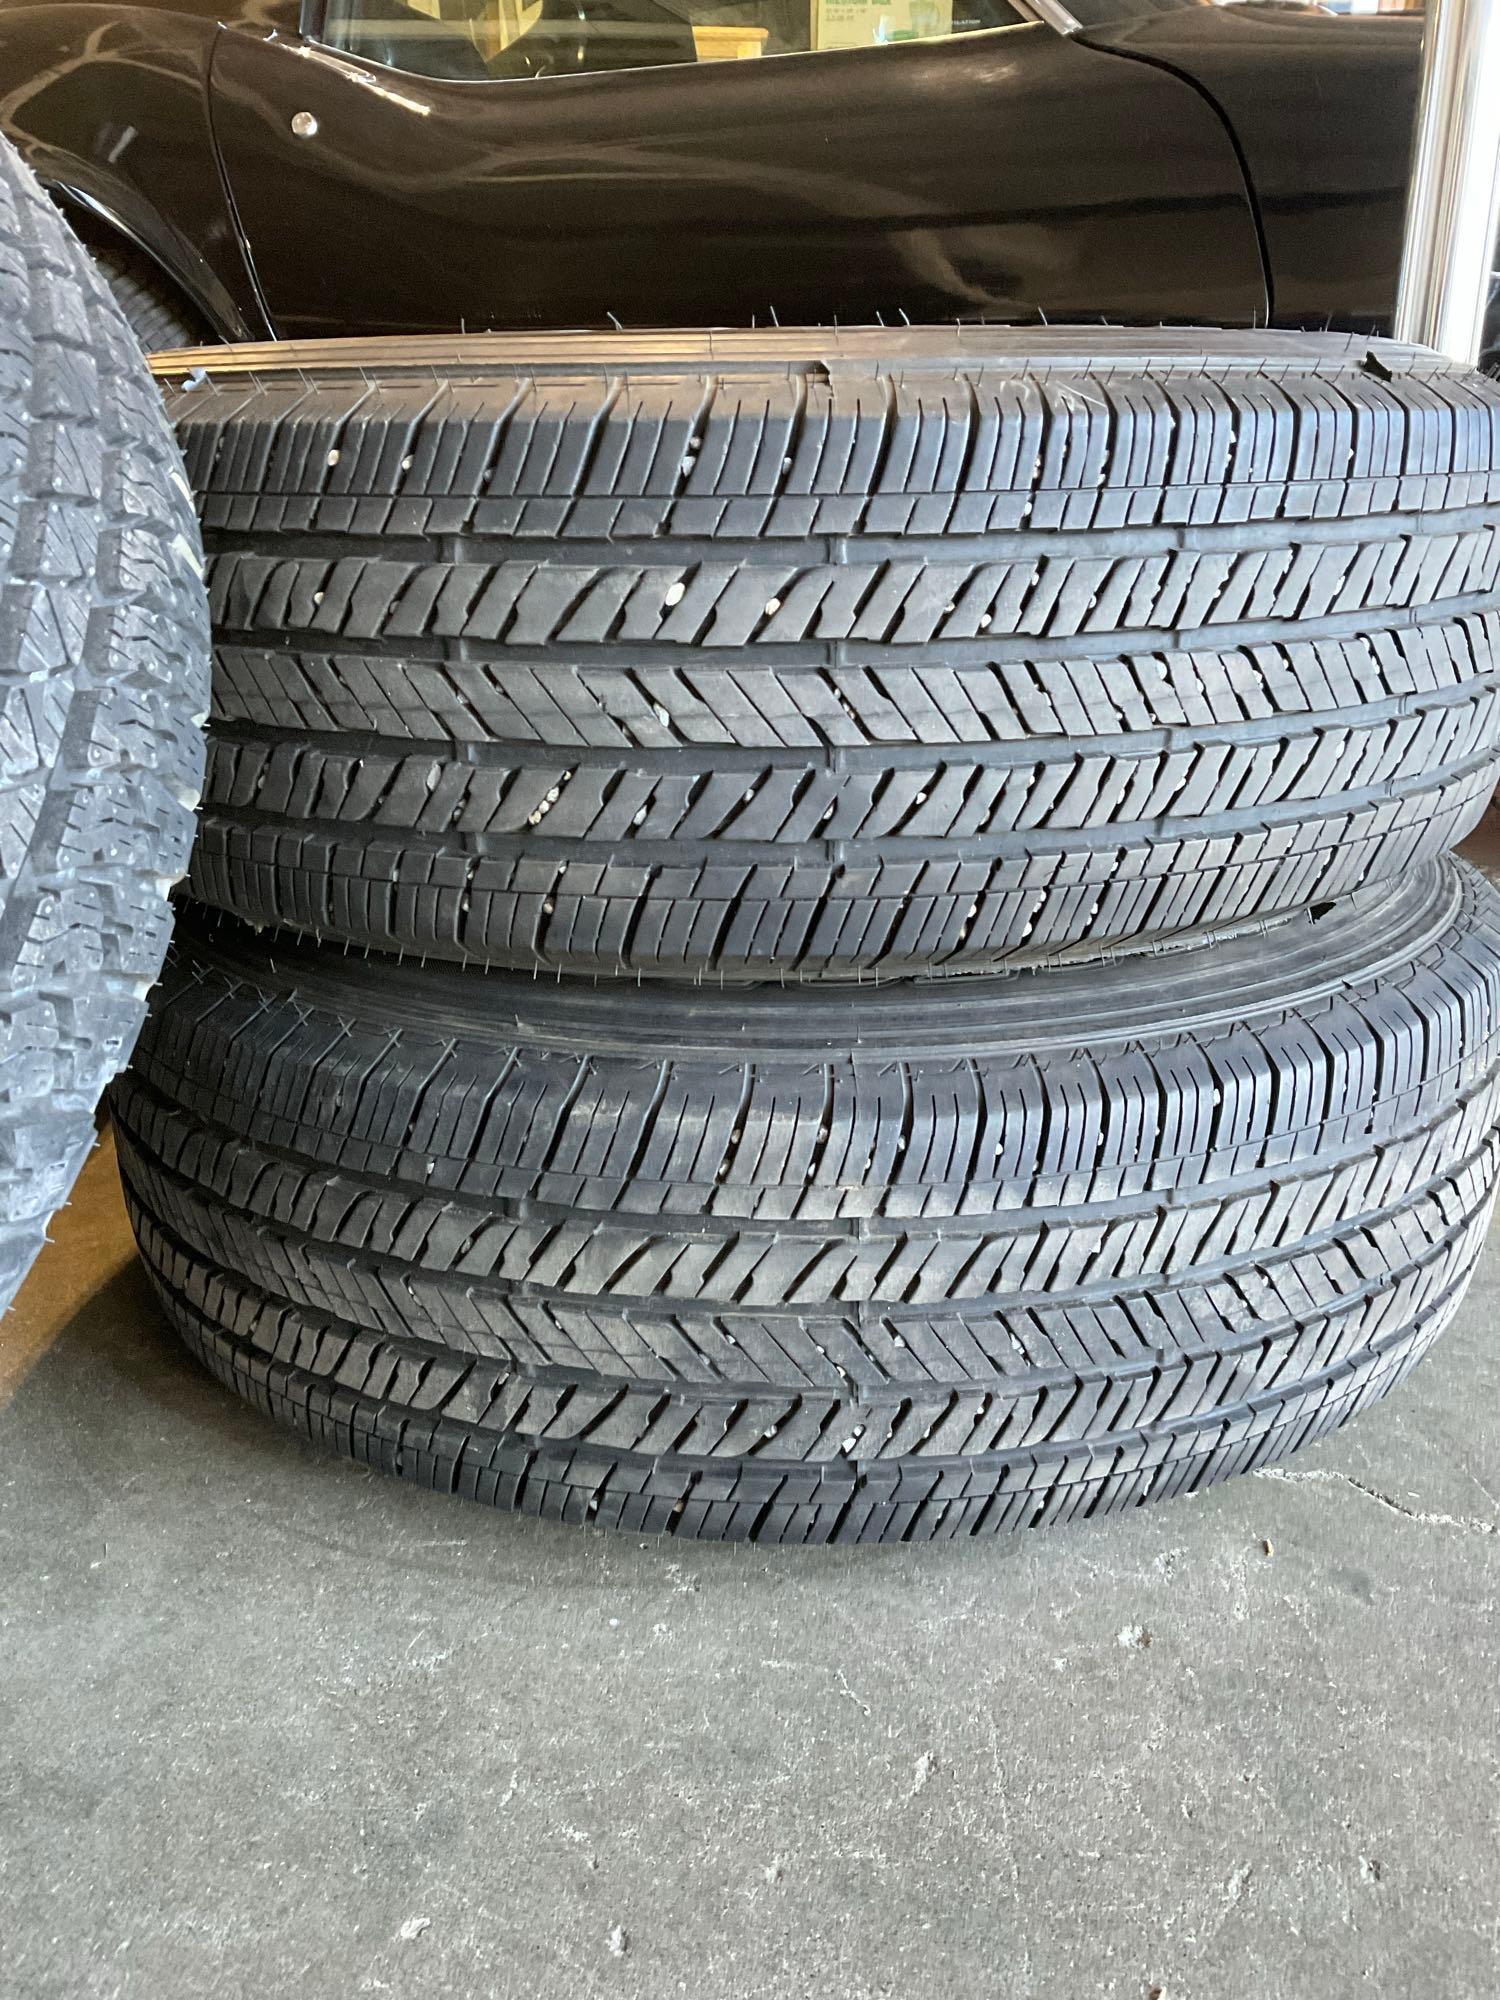 Set of 4 Ducler H/T Bridgestone 255/70R18 113T M+S Jeep Tires & Additional A/T P225/70R18 112S M+S